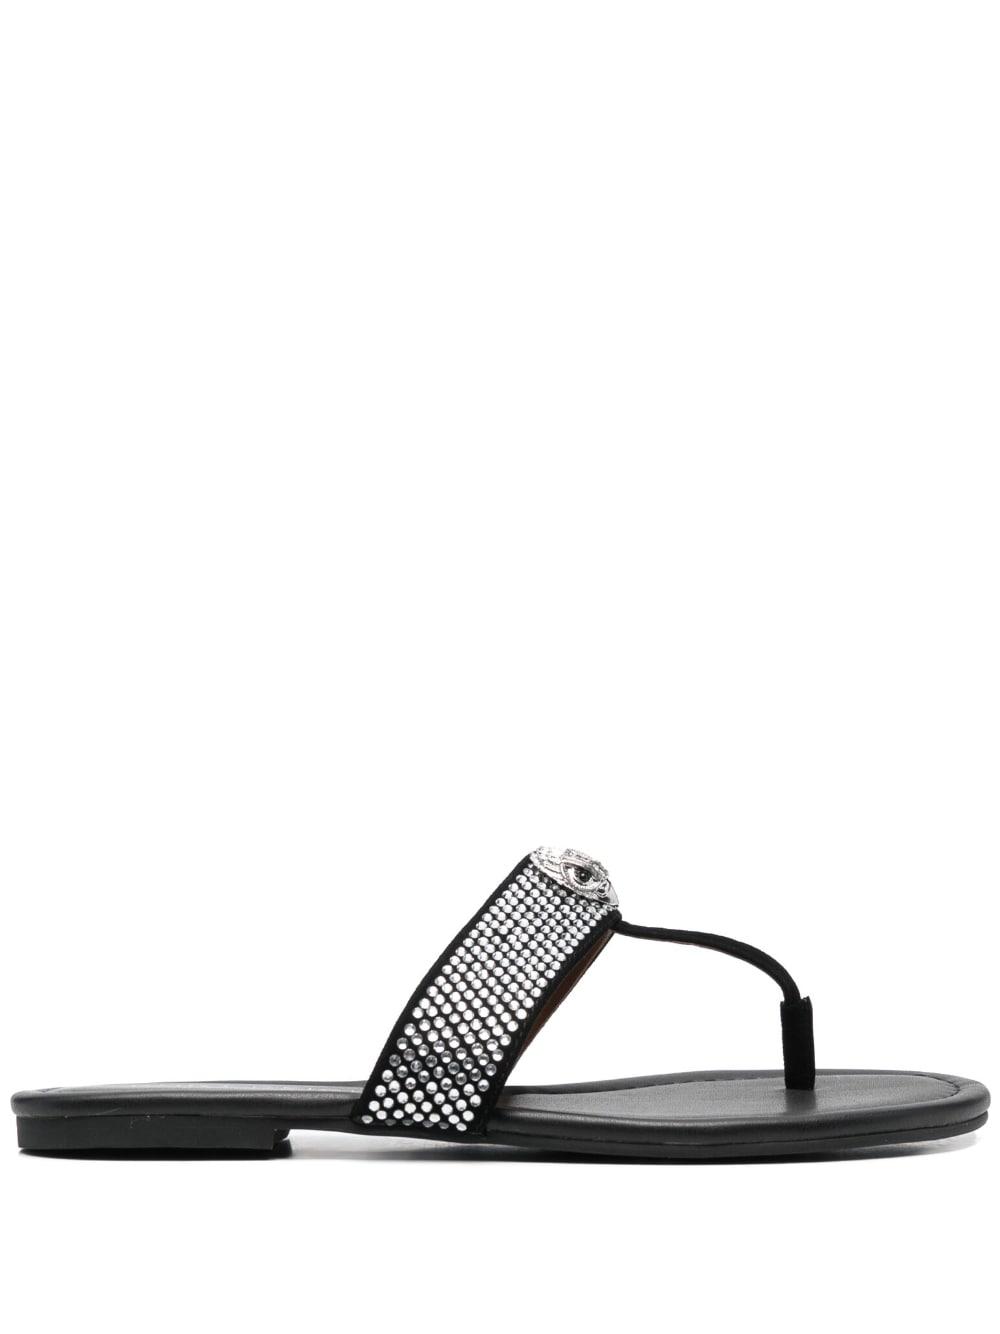 Kurt Geiger Crystal-embellished T-bar Sandals in Black | Lyst